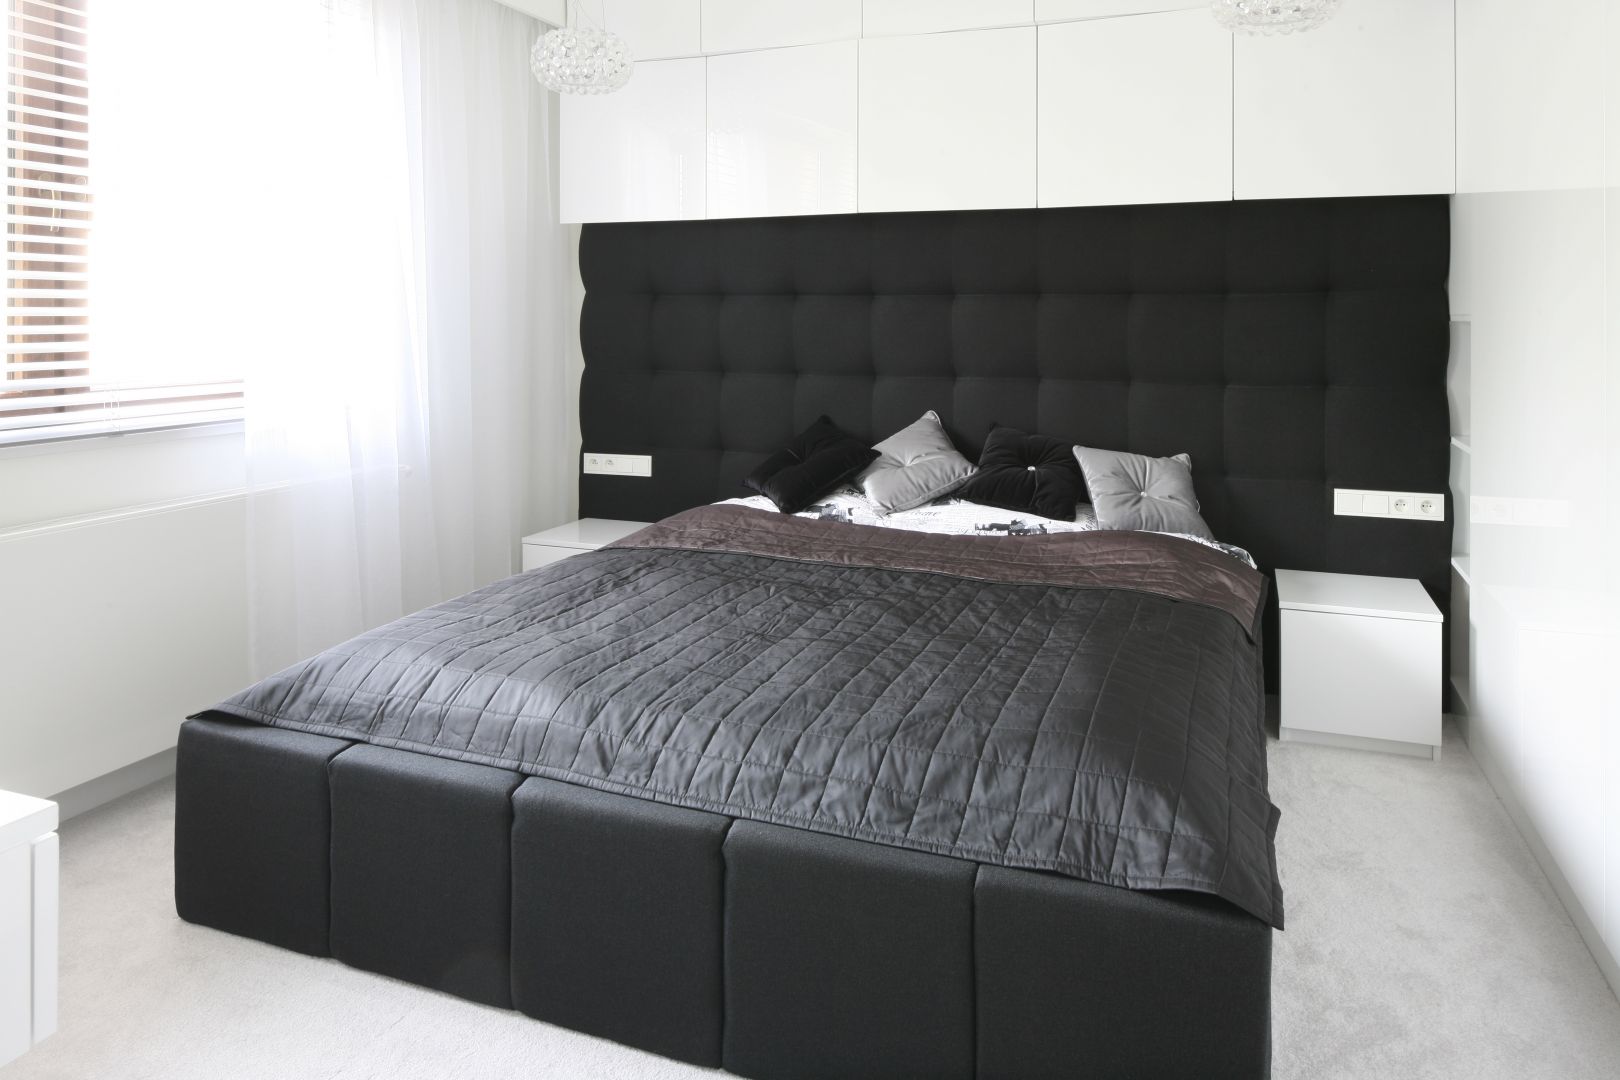 Sypialnia urządzona w czerni i bieli. Piękny dekoracyjny zagłówek rozciągnięty na całą szerokość ściany to ciekawy element wnętrza. Projekt: Dominik Respondek. Fot. Bartosz Jarosz 